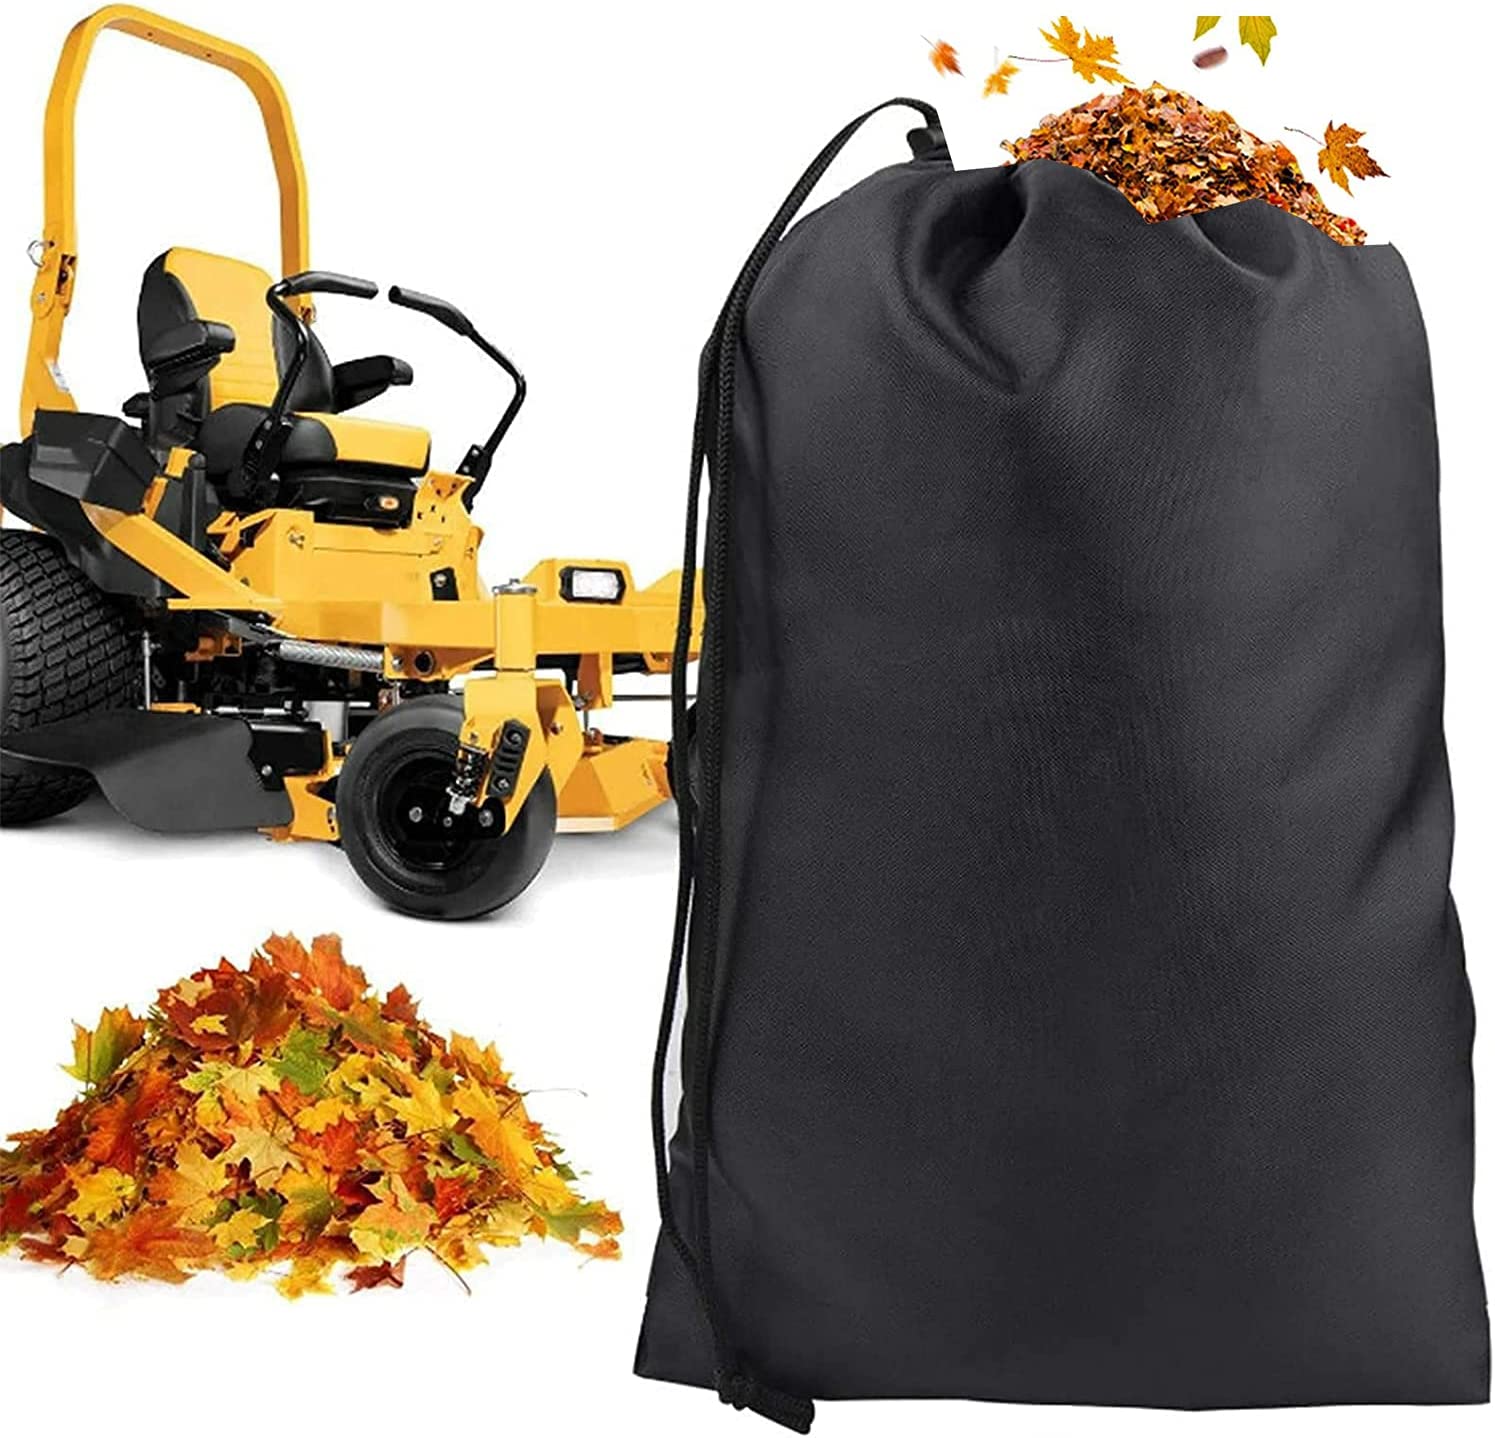 Sozize Lawn Tractor Leaf Bag Big Capacity Lawn Mower Leaf Bag